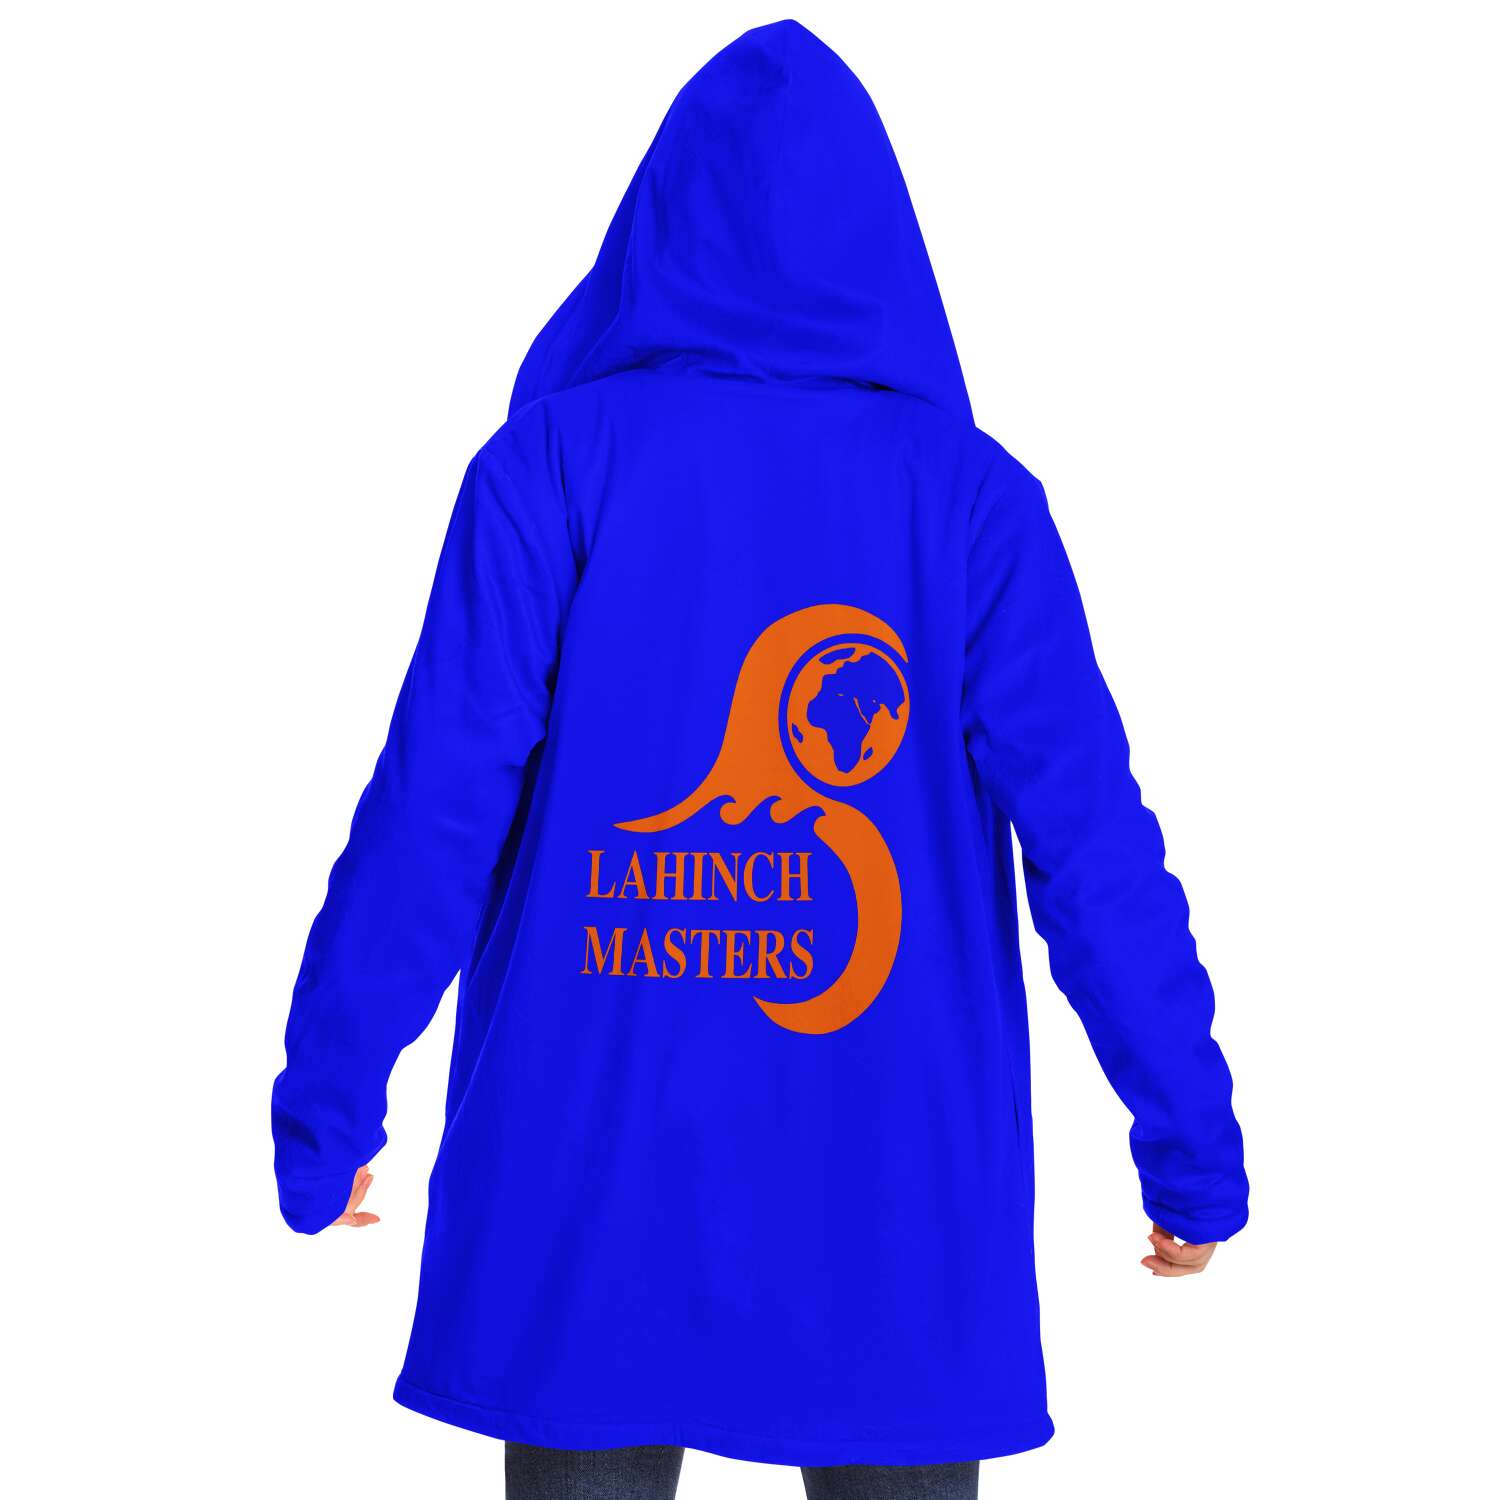 Lahinch Masters microfiber hoodie